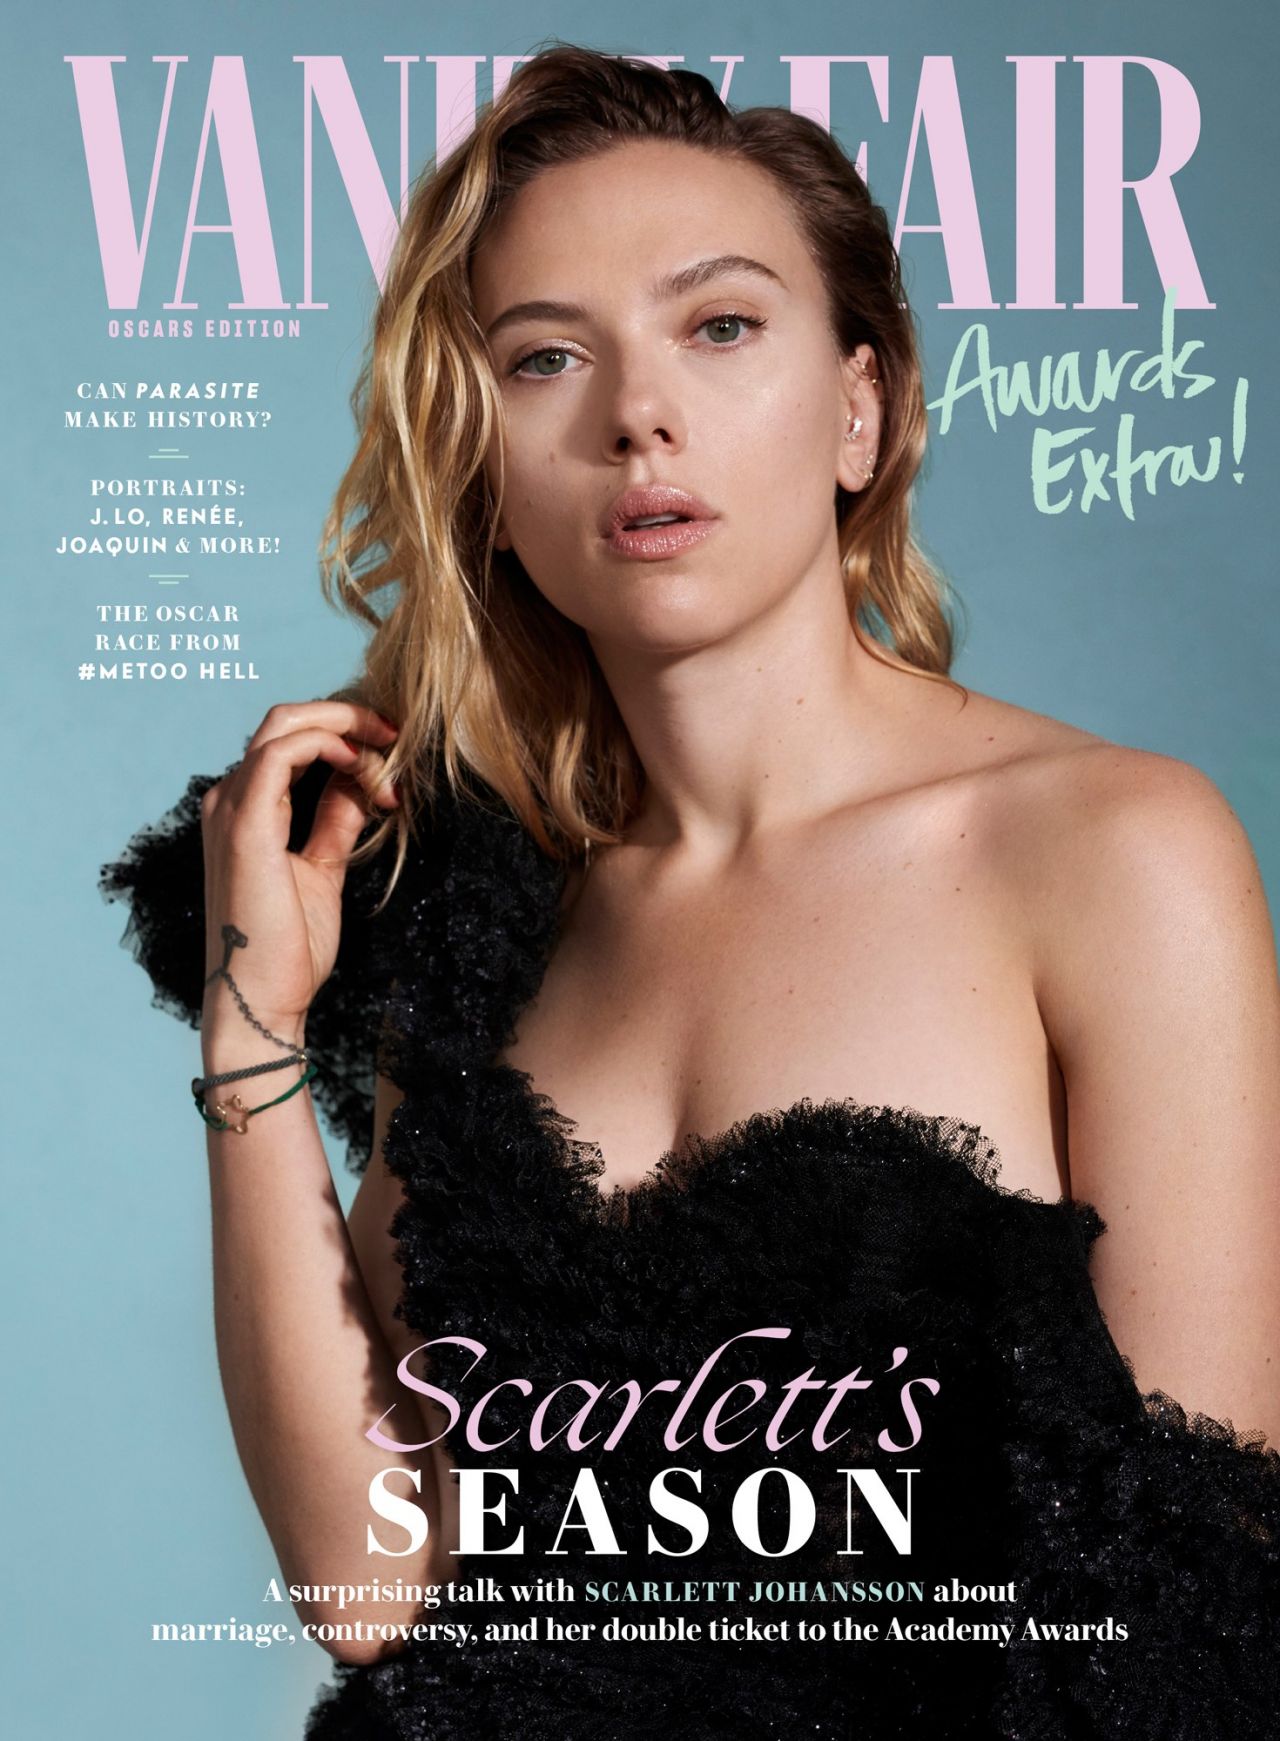 Scarlett Johansson - Vanity Fair November 2019 Cover and ...